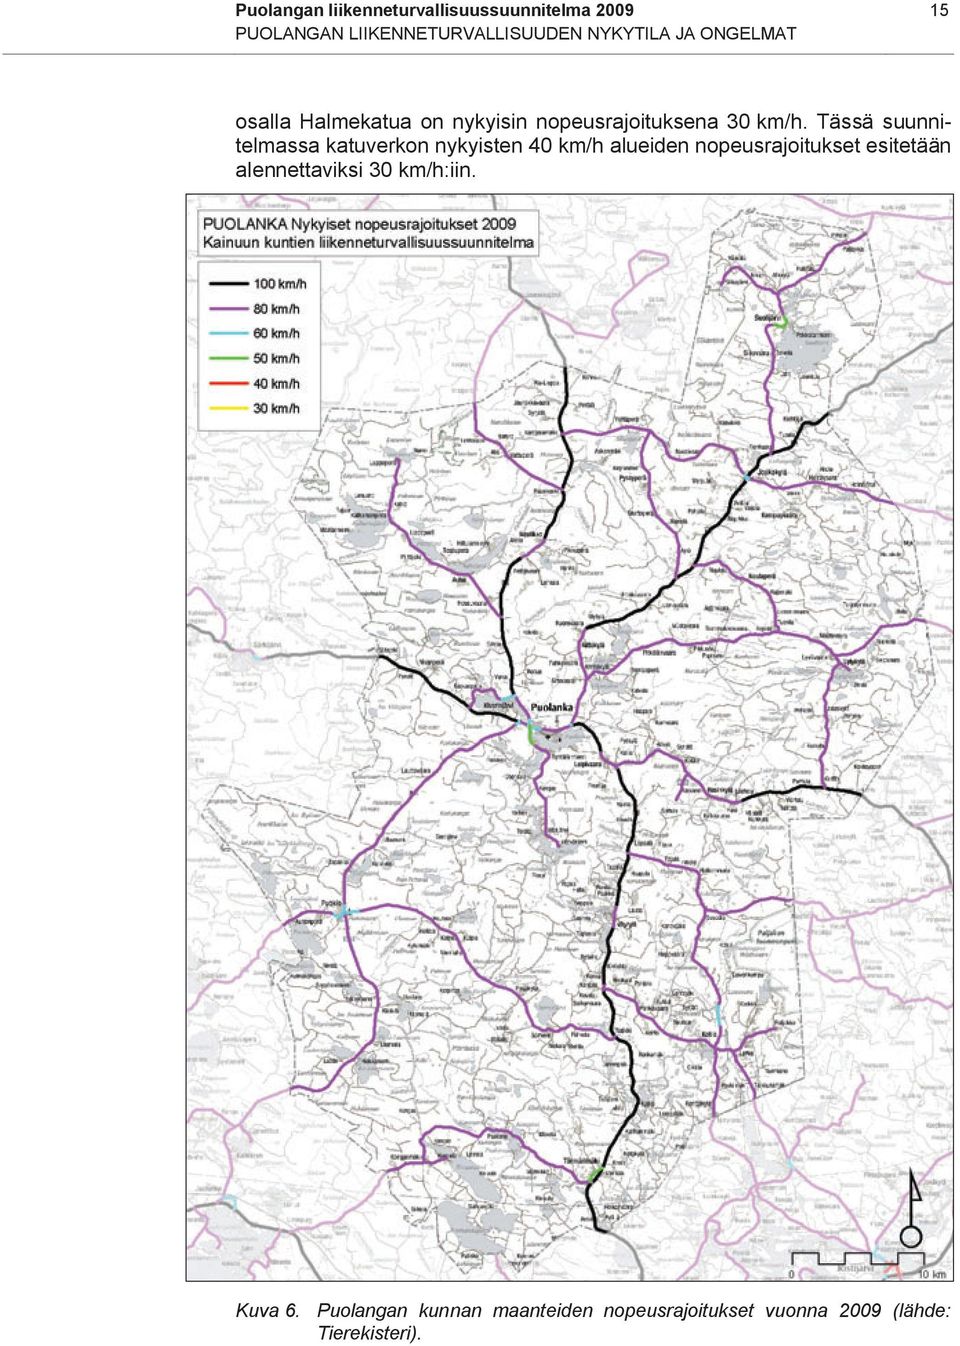 Tässä suunnitelmassa katuverkon nykyisten 40 km/h alueiden nopeusrajoitukset esitetään